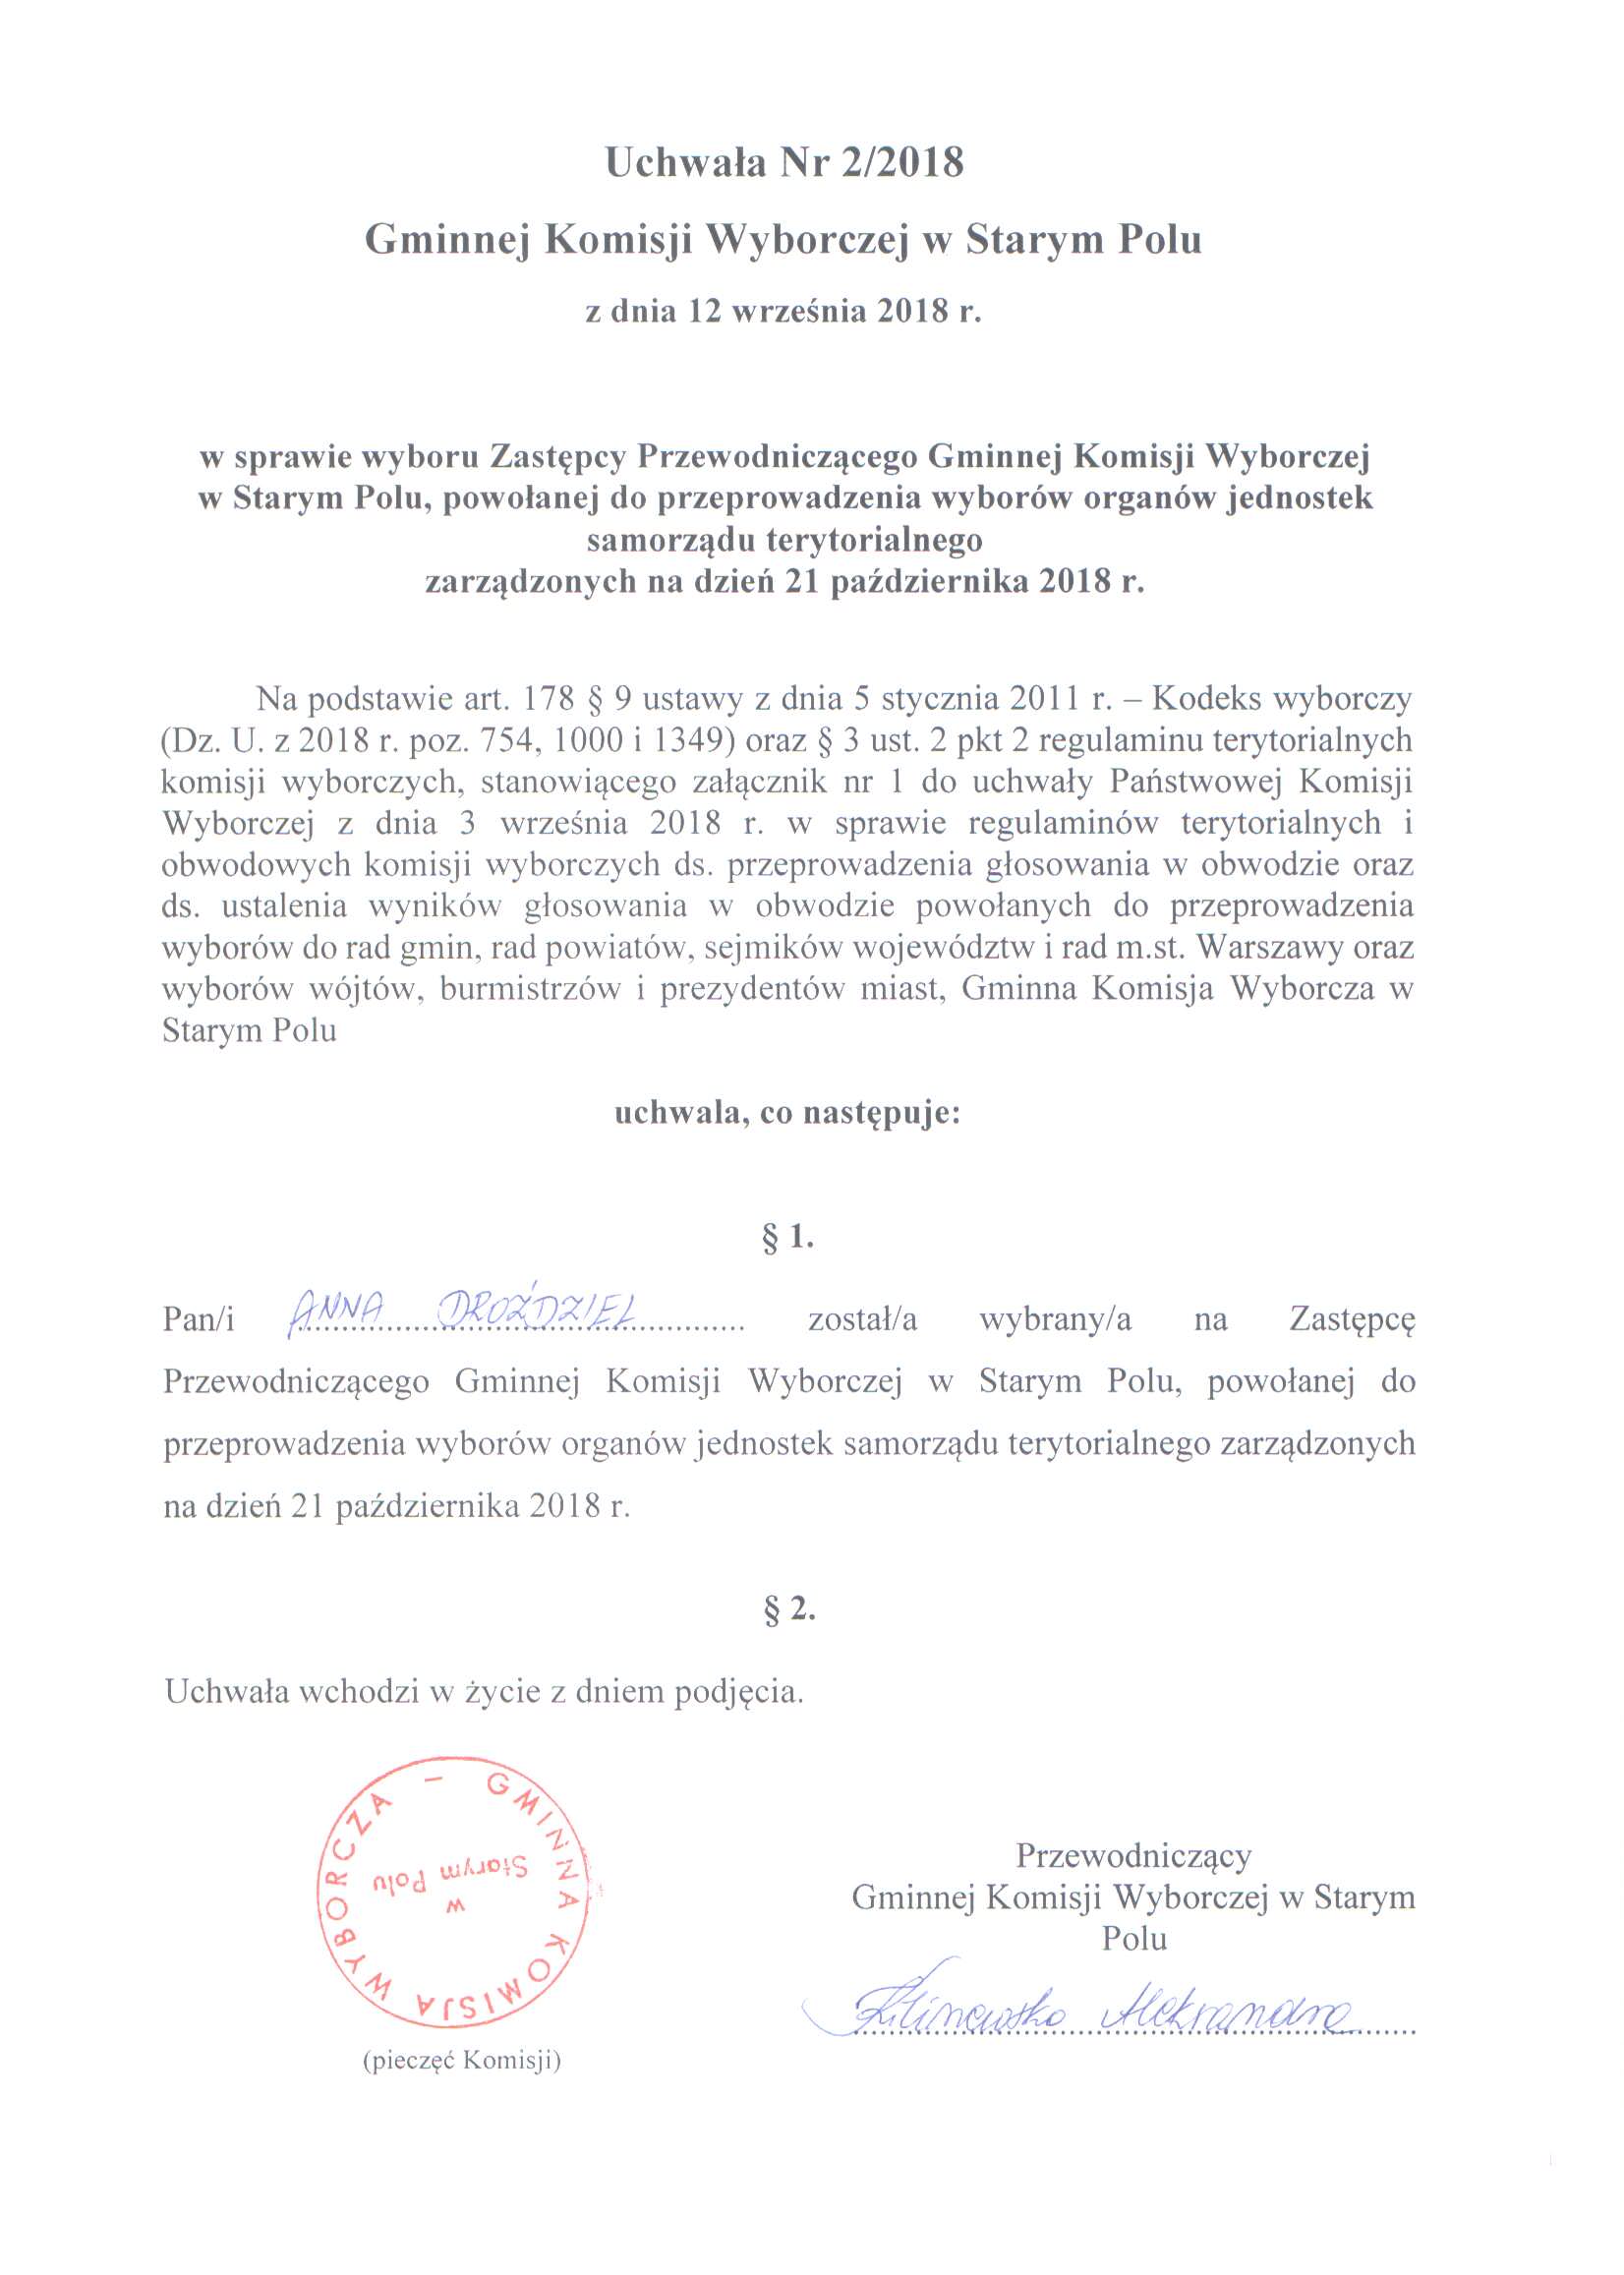 Uchwała Nr 2/2018 Gminnej Komisji Wyborczej w Starym Polu z dnia 12 września 2018 r.